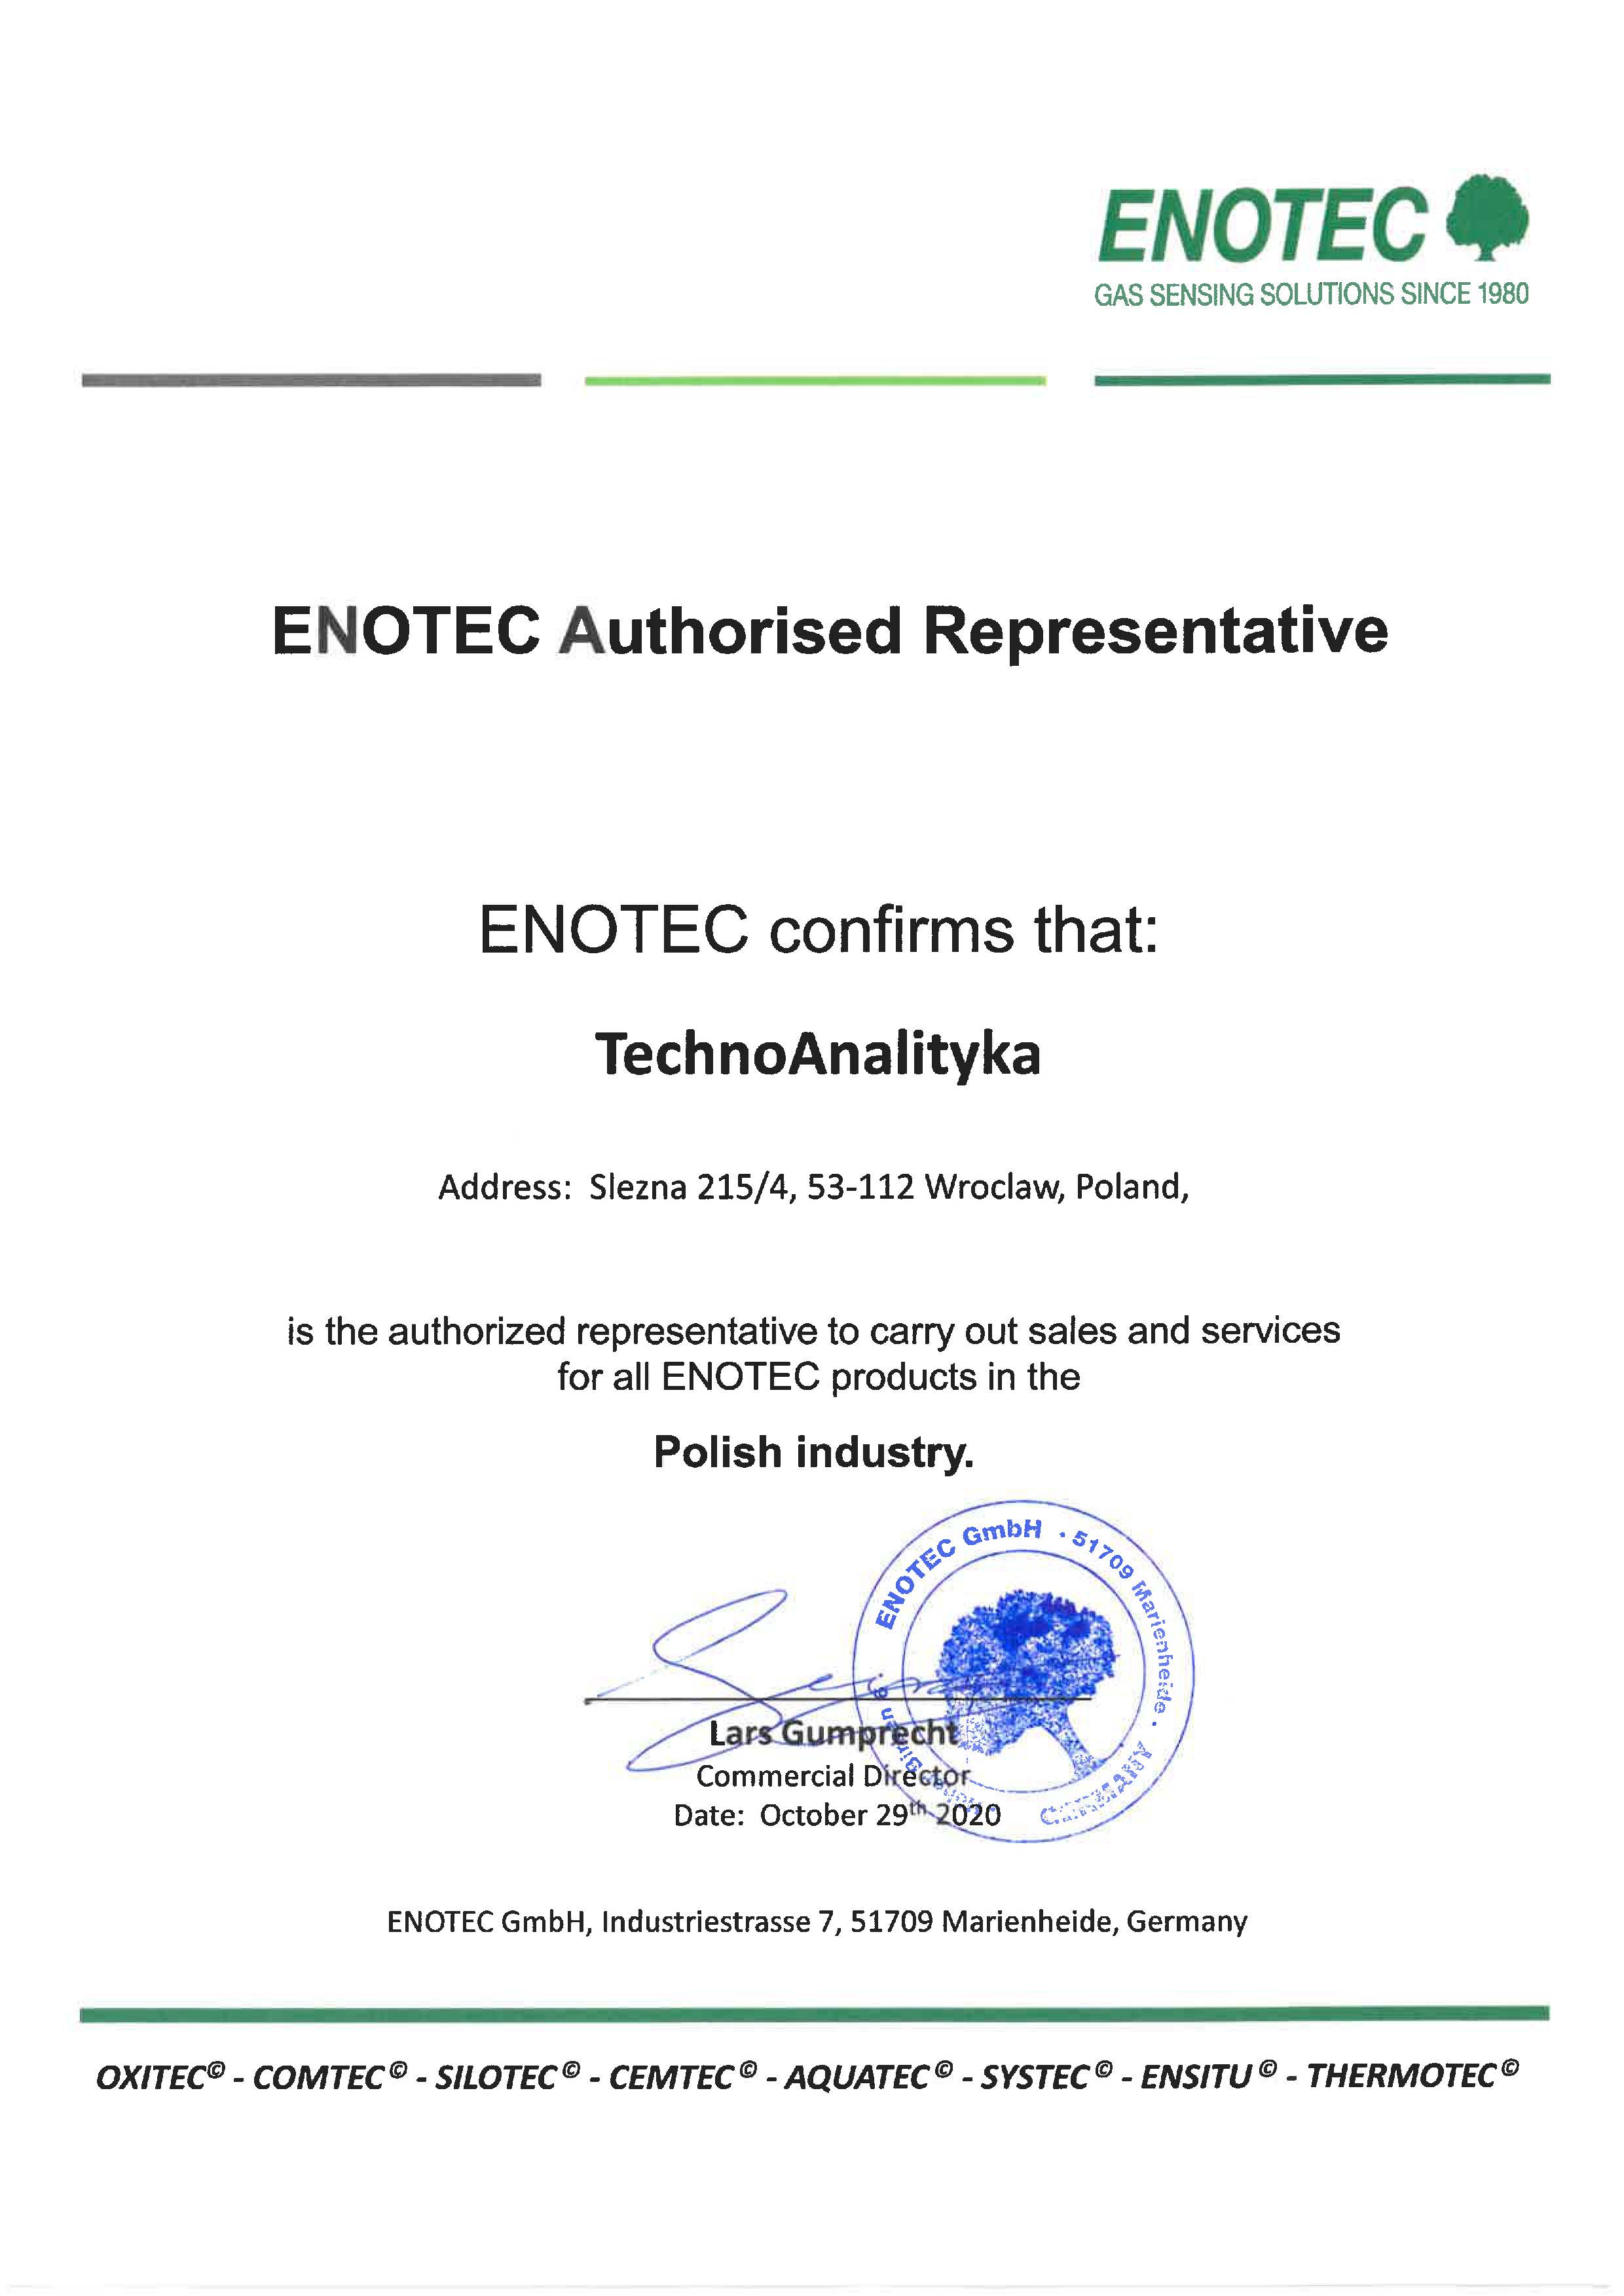 Skan certyfikatu polecającego firmę Technoanalityka jako autoryzowanego przedstawiciela firmy ENOTEC w zakresie sprzedaży i serwisu produktów